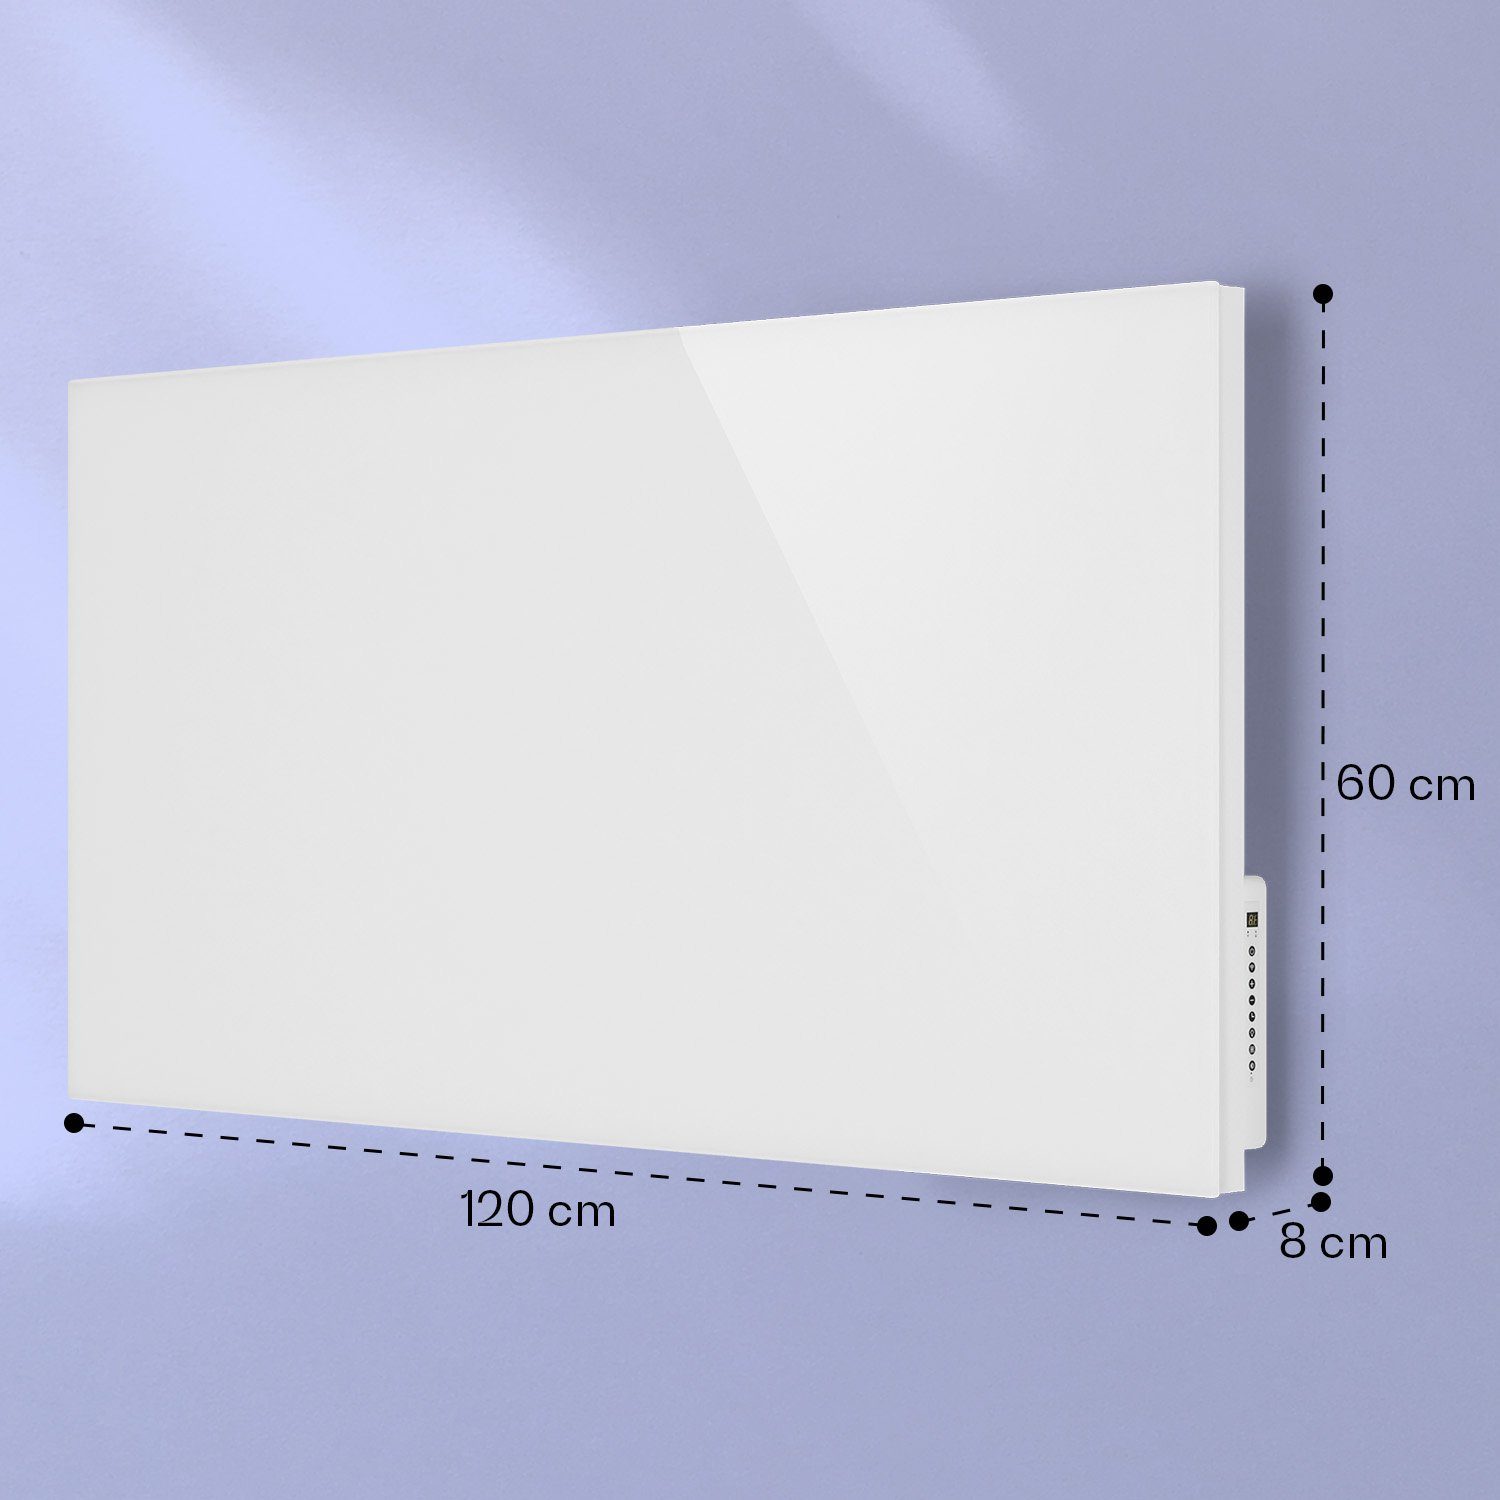 Infrarot 2-in-1 Klarstein 1000 mit elektrischer Mojave Thermostat Heizkörper Wärmestrahlung Heizgerät, Weiß smart Heizung